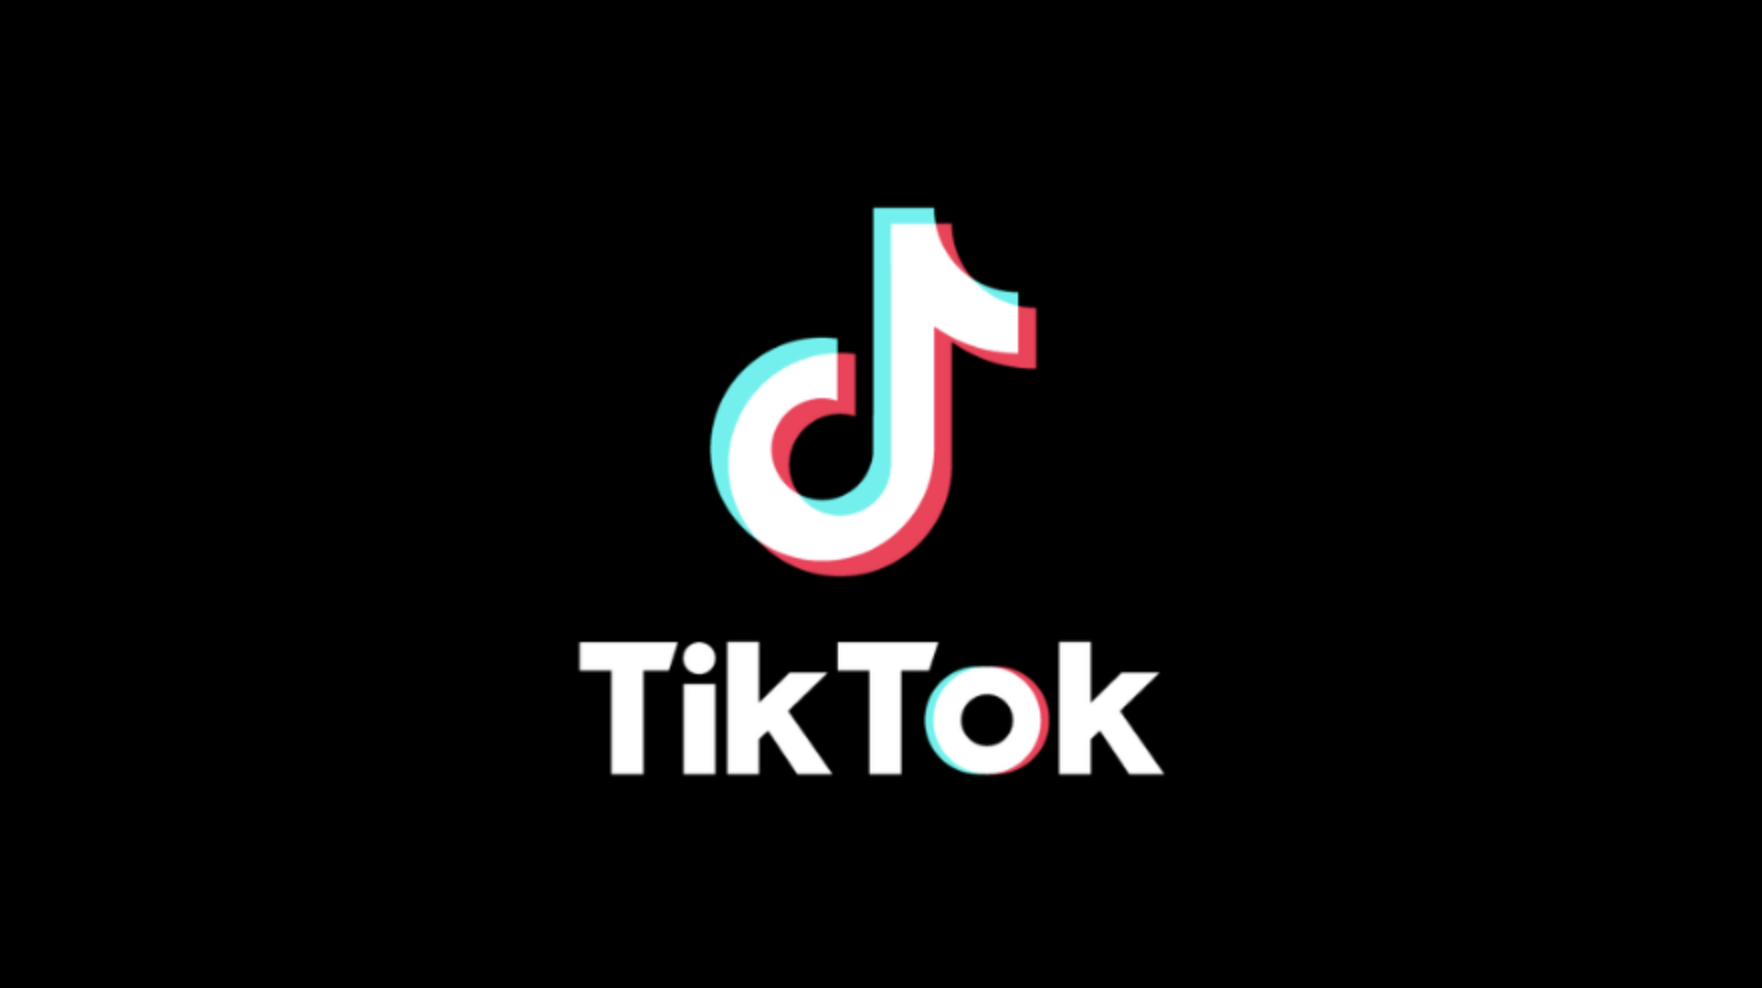 Lancé en septembre 2016 par la société ByteDance, TikTok est un réseau social&nbsp;qui se présente sous la forme d'une application mobile pour les plateformes iOS et Android.&nbsp;© ByteDance